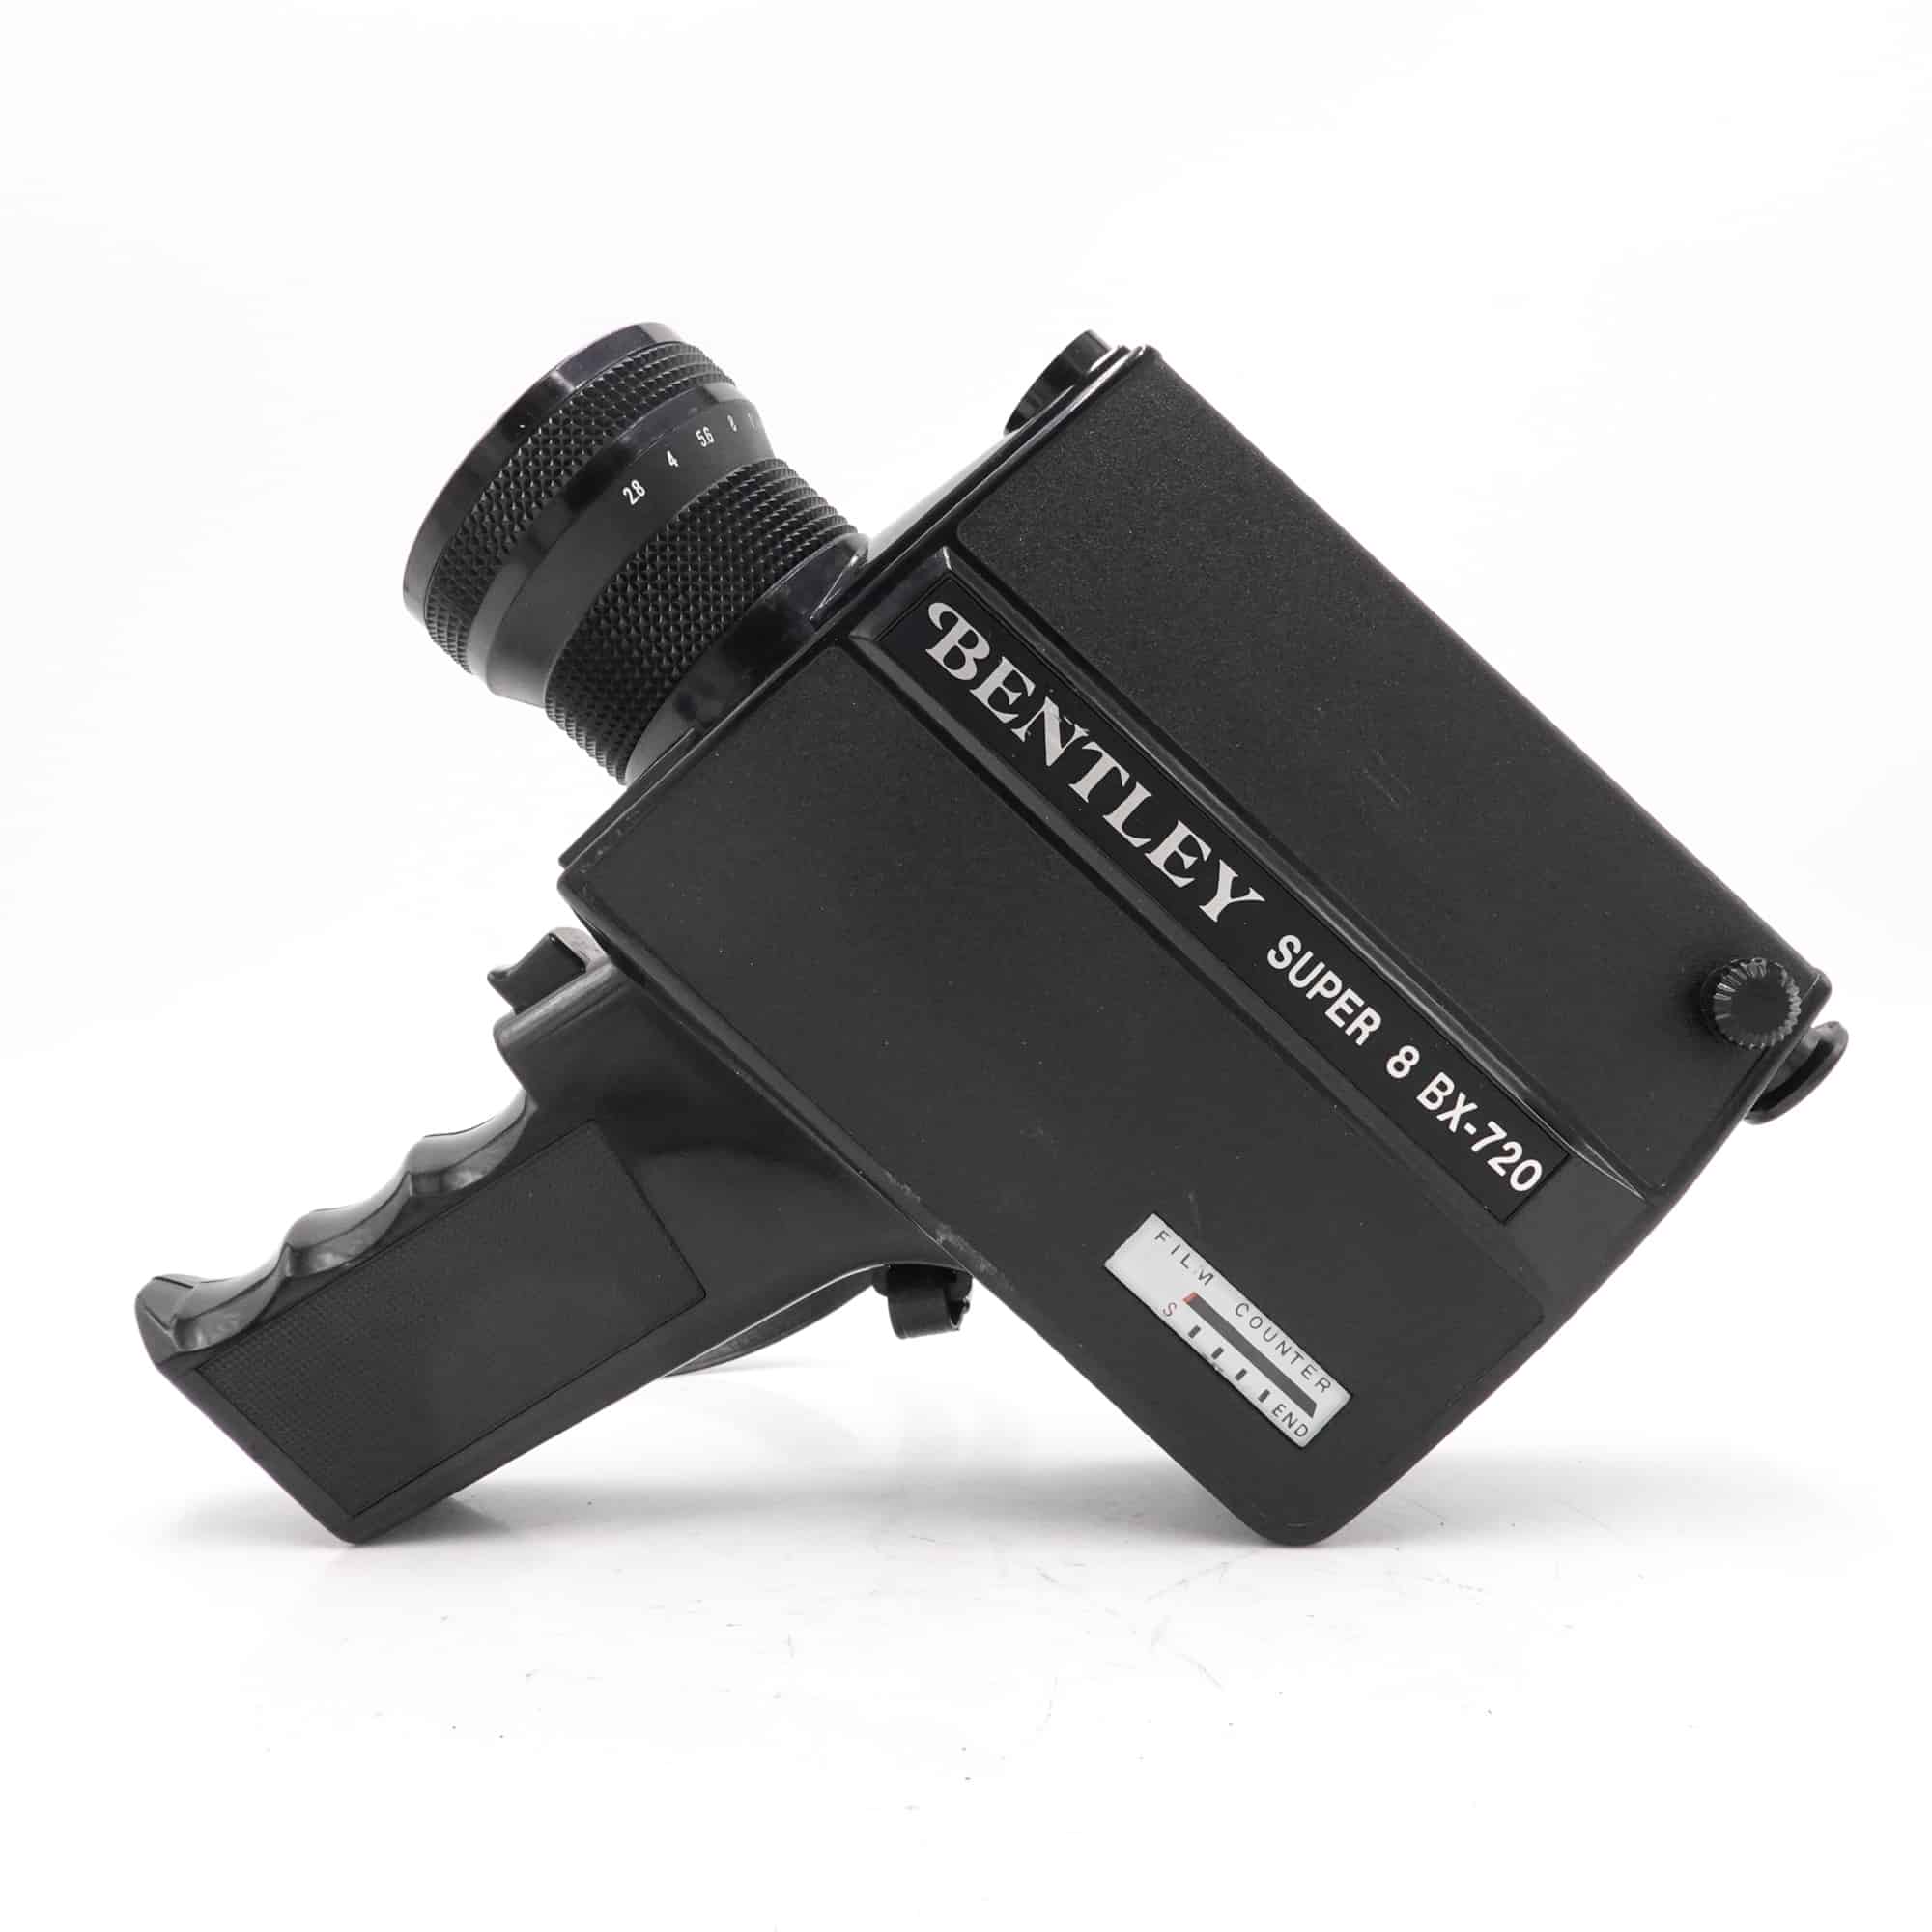 bentley-bx-720-super-8-camera